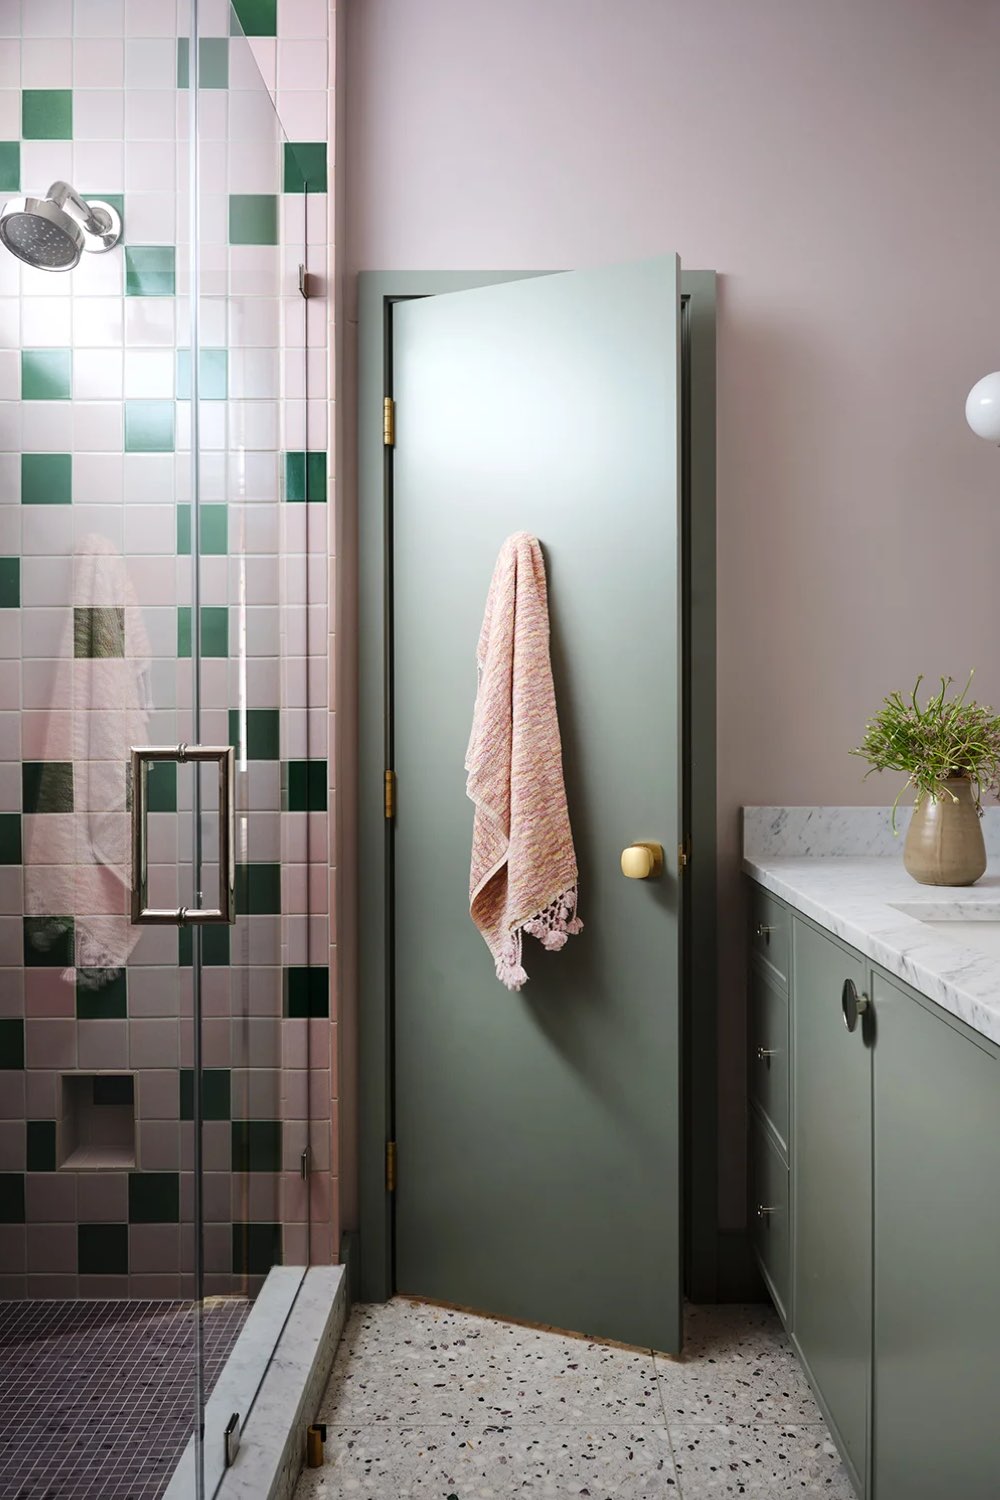 visite interieur maison decor moderne et classique chic petite salle de douche enfant couleur vert et blanc rose carrelage terrazzo peinture meuble